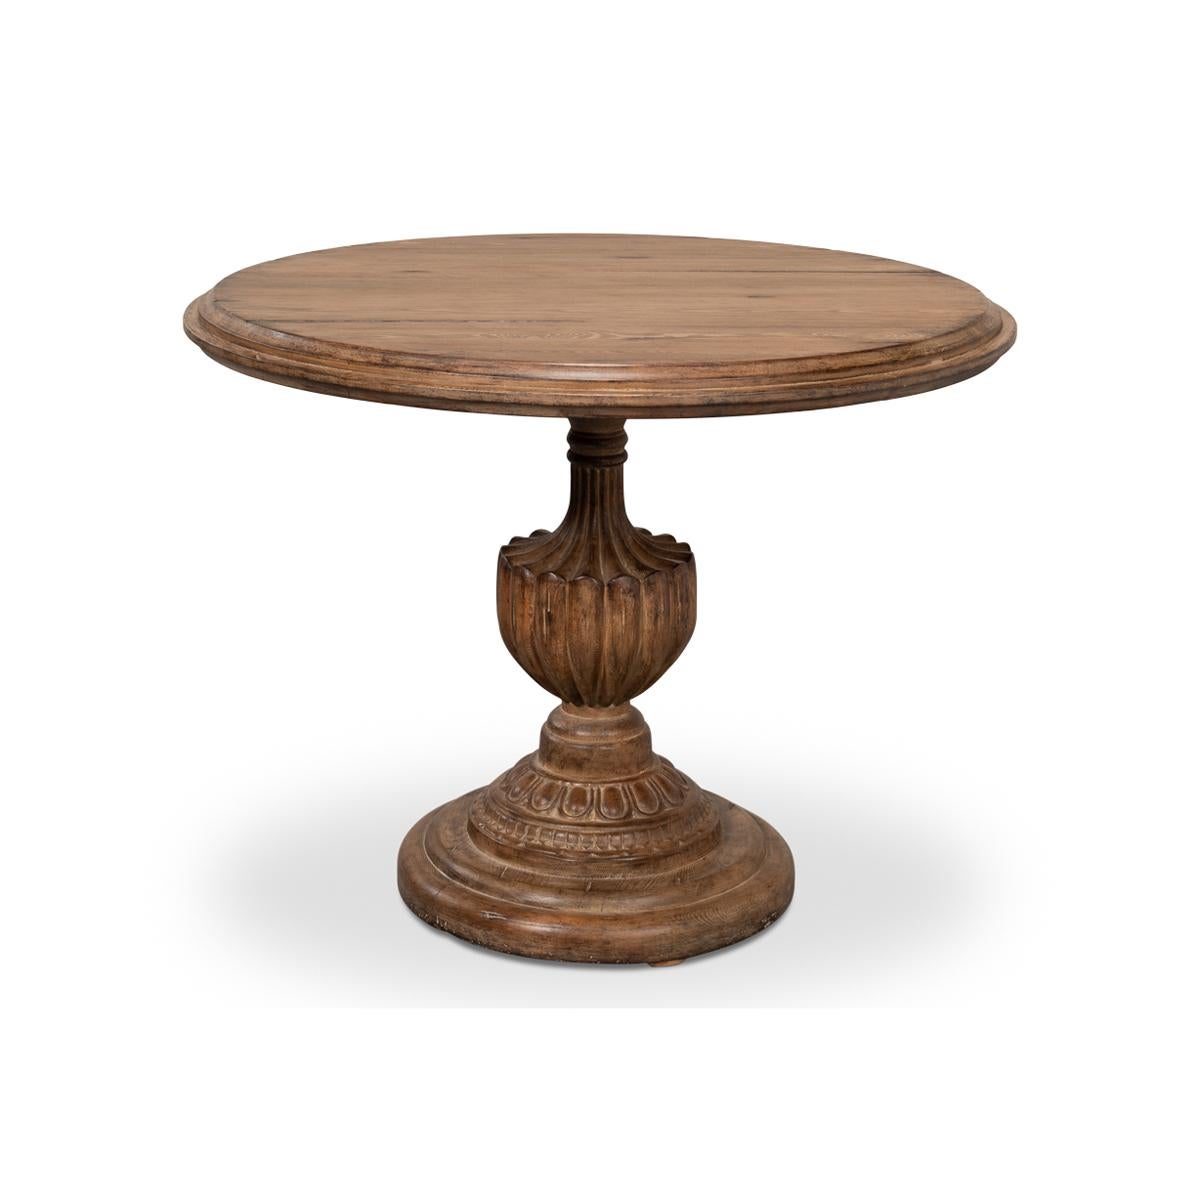 NeoClassic Bistro Tisch, ein Stück, das zeitloses Design und moderne Funktionalität nahtlos miteinander verbindet. Dieser handgefertigte Tisch aus massivem, aufgearbeitetem Kiefernholz zeigt die Schönheit natürlicher Materialien und wertet Ihren